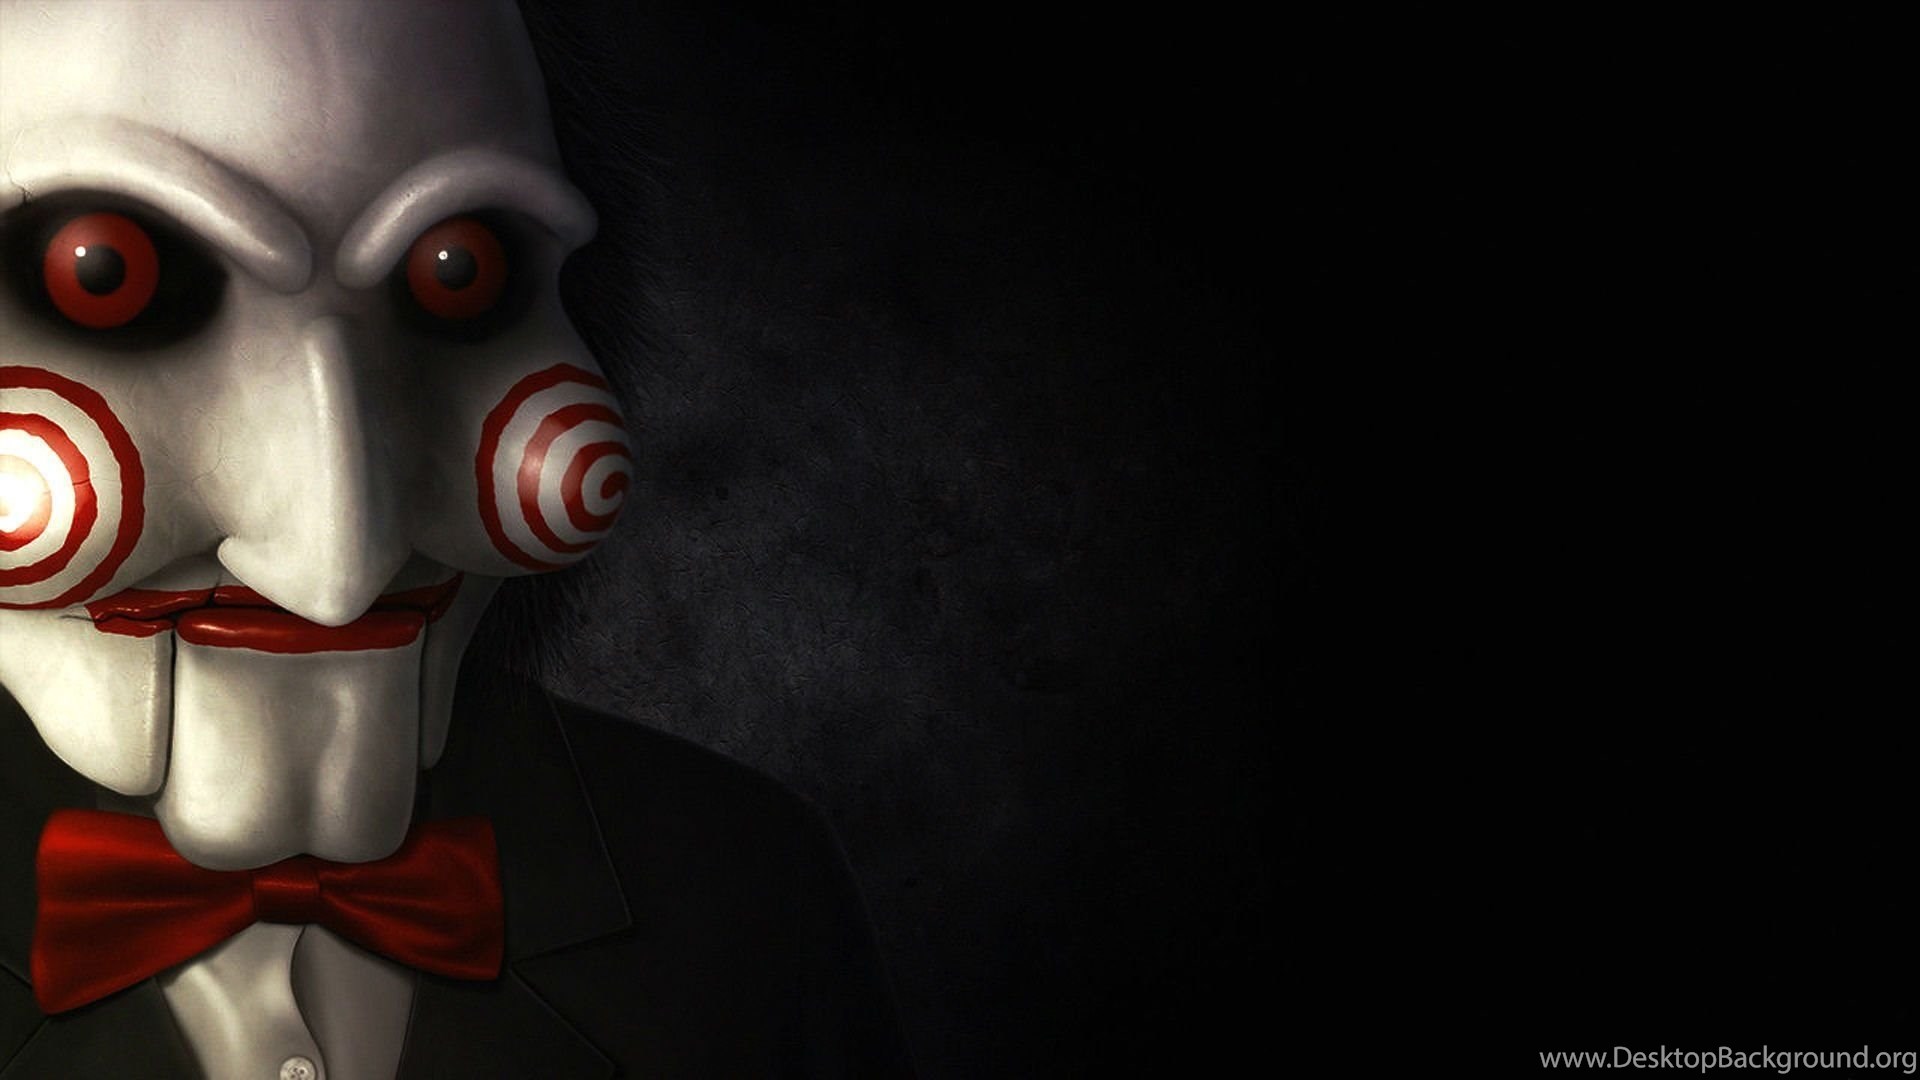 SAW Horror Dark Thriller Evil 1saw Mask Wallpaper Desktop Background